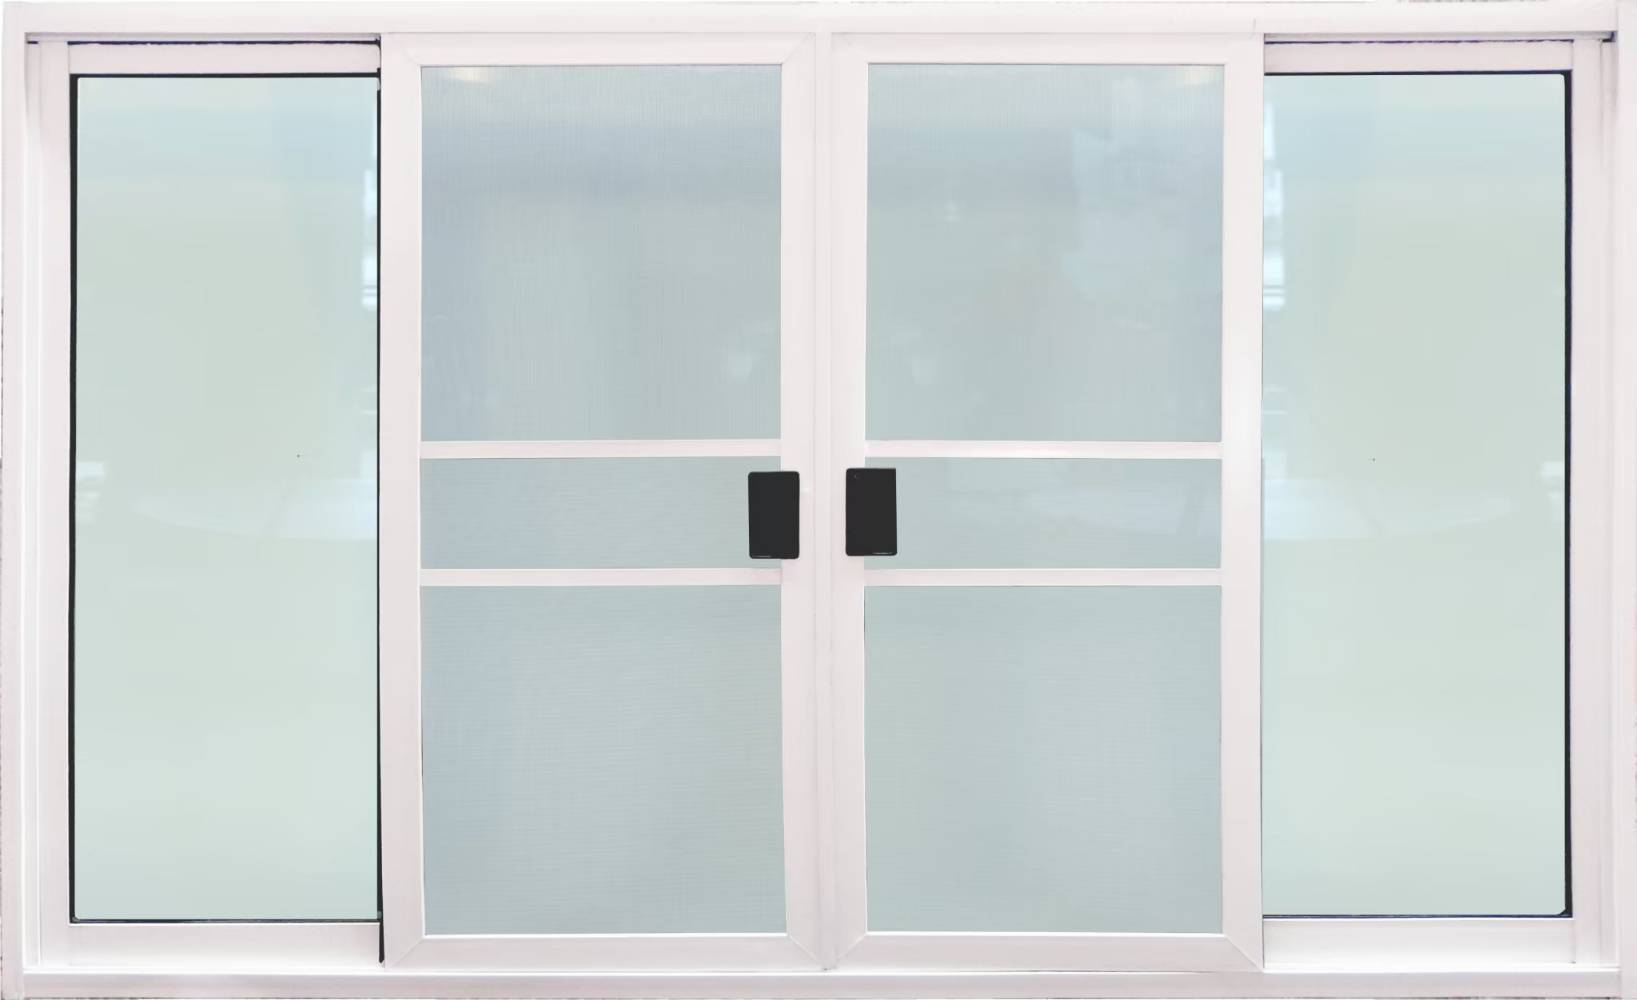 หน้าต่างบานเลื่อน 4ช่อง อลูมิเนียมสีอบขาว+กระจกใสเขียว+มุ้ง 180ซม.*110ซม.